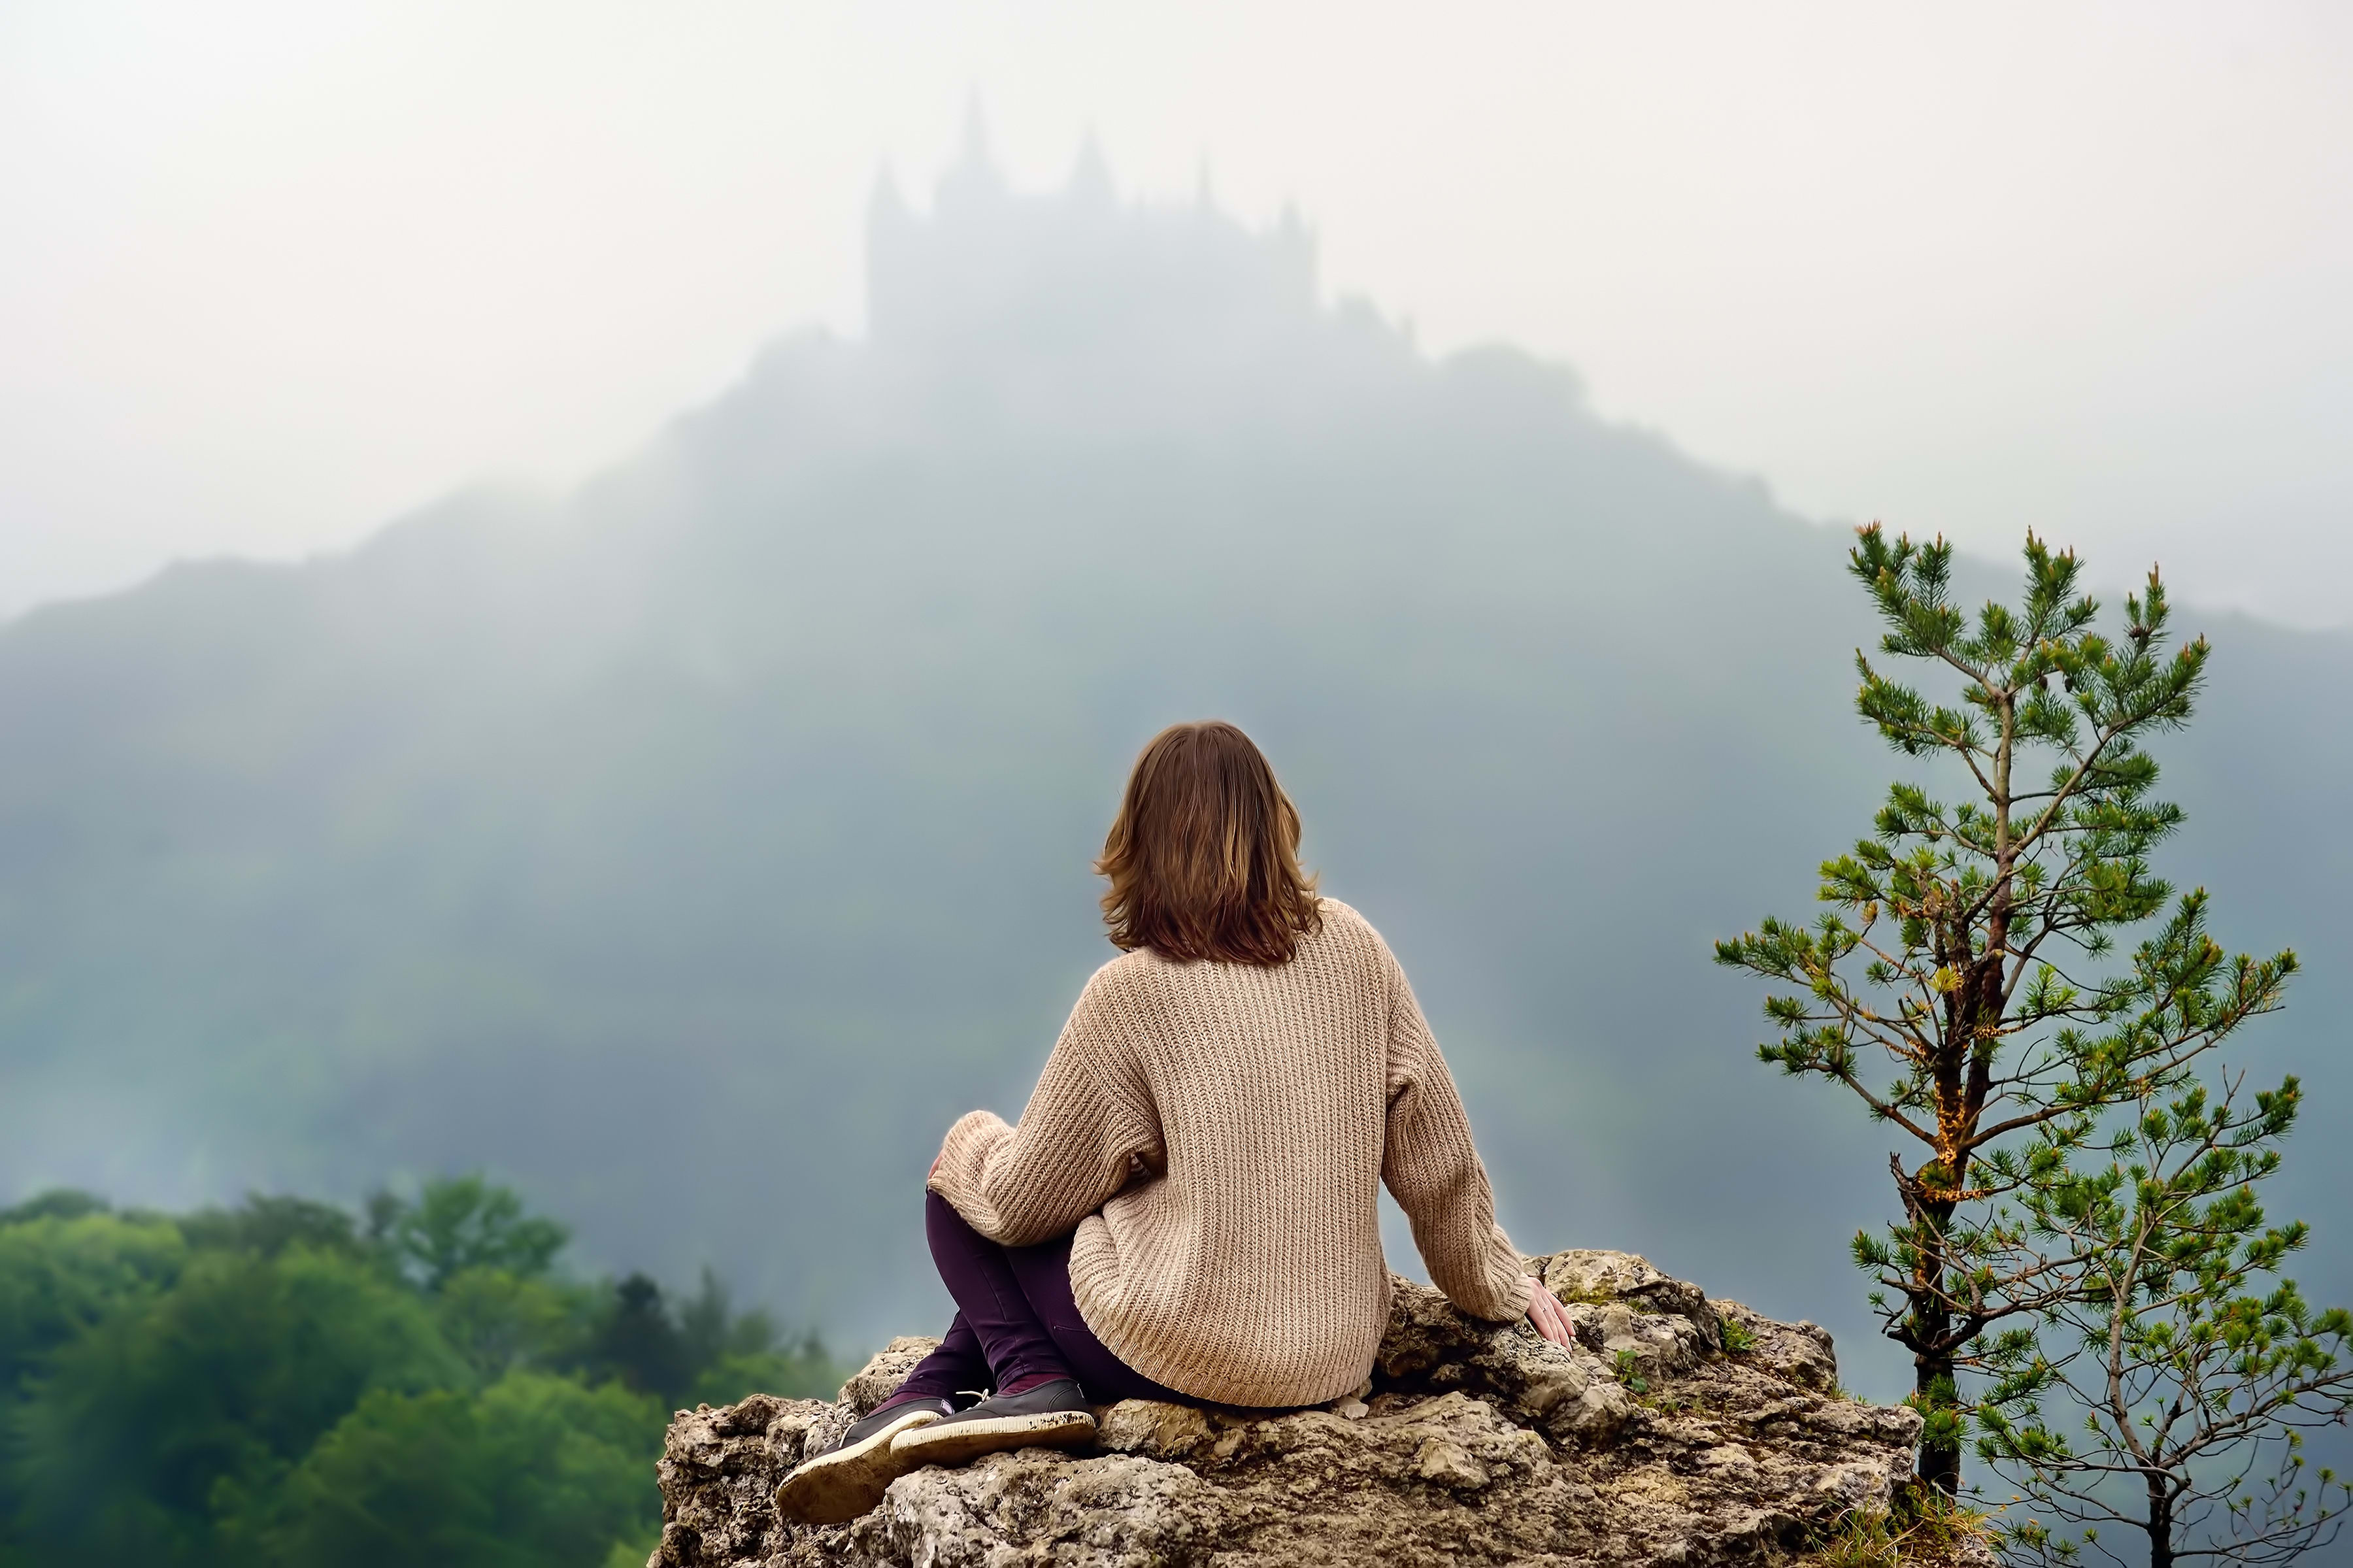 Joven turista mirando el famoso castillo de Hohenzollern en medio de una espesa niebla, Alemania